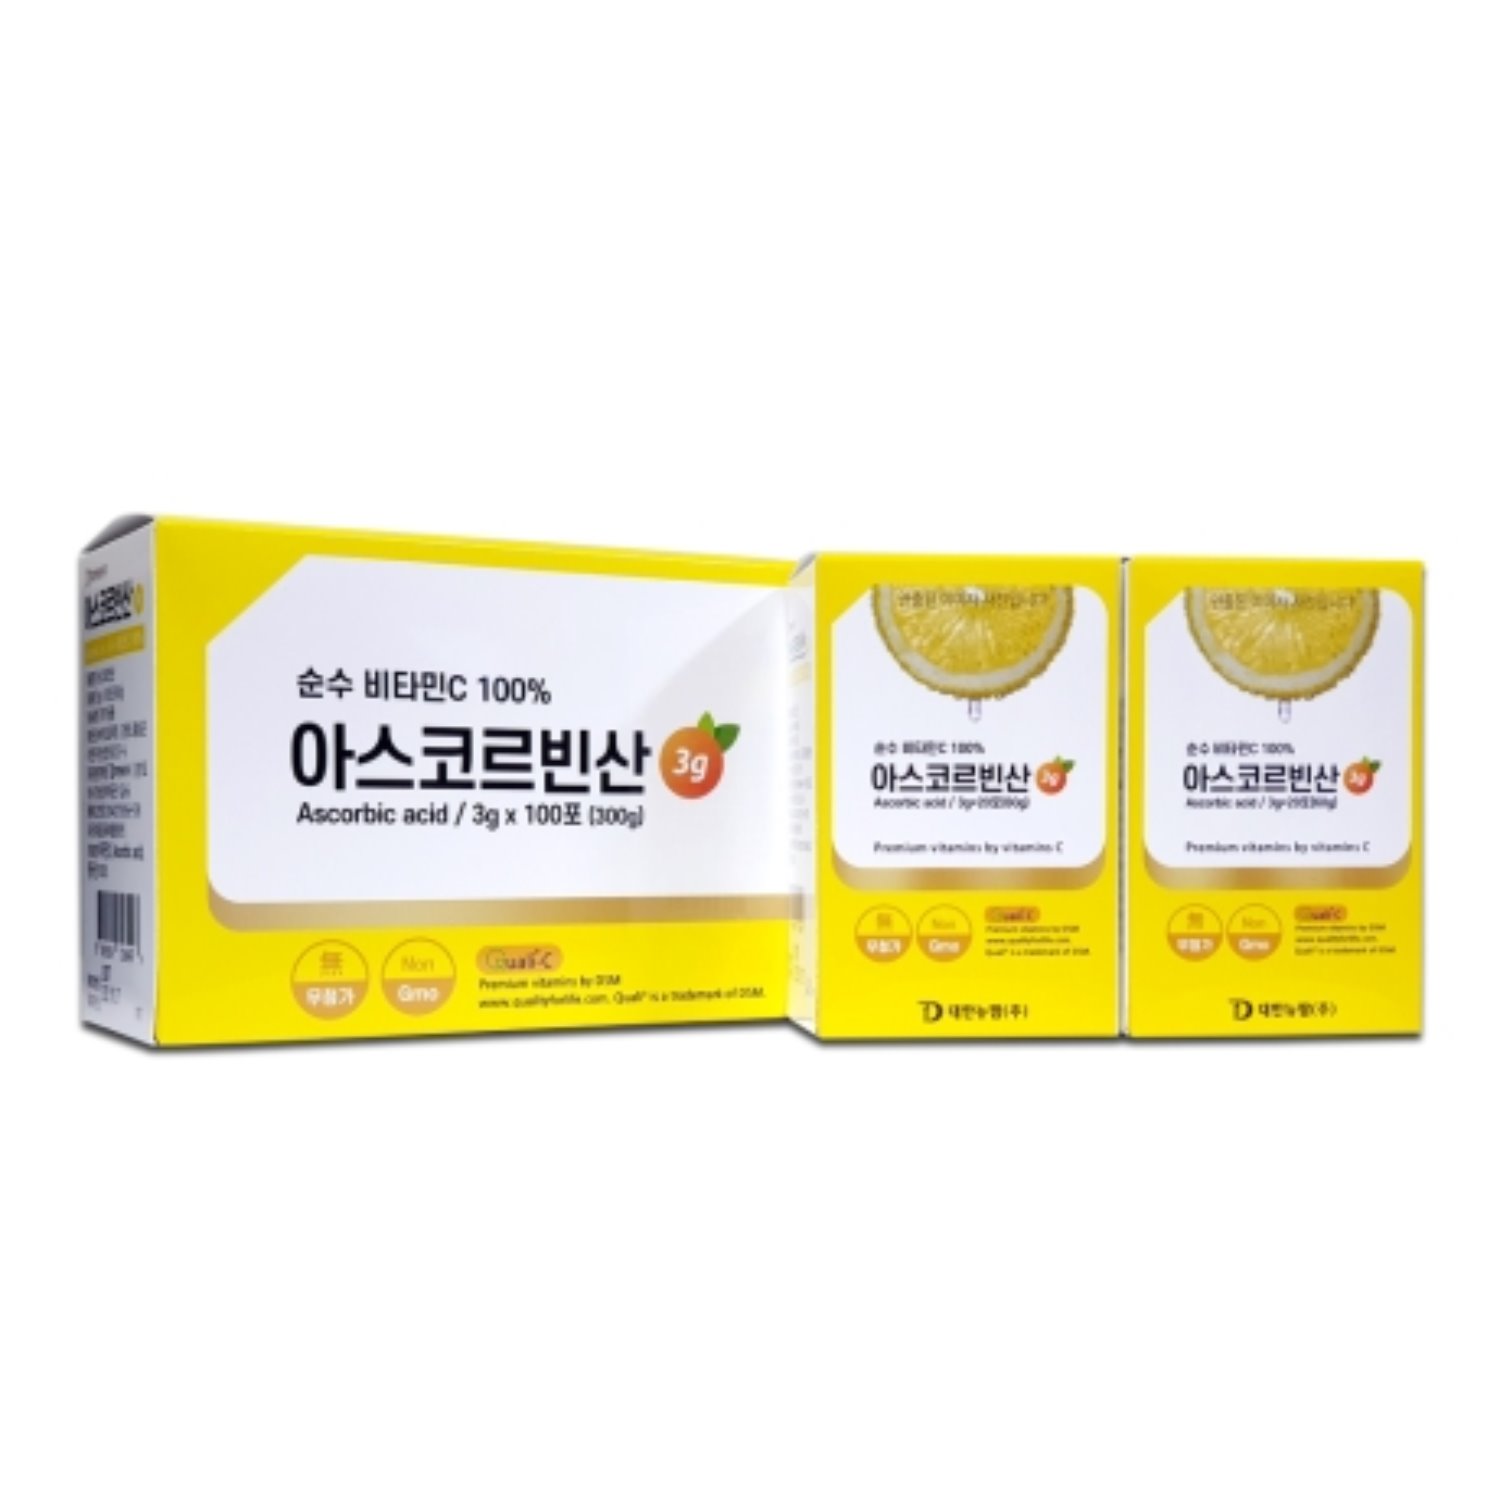 순수 비타민C 100% 아스코르빈산 3g×100포 (300g)